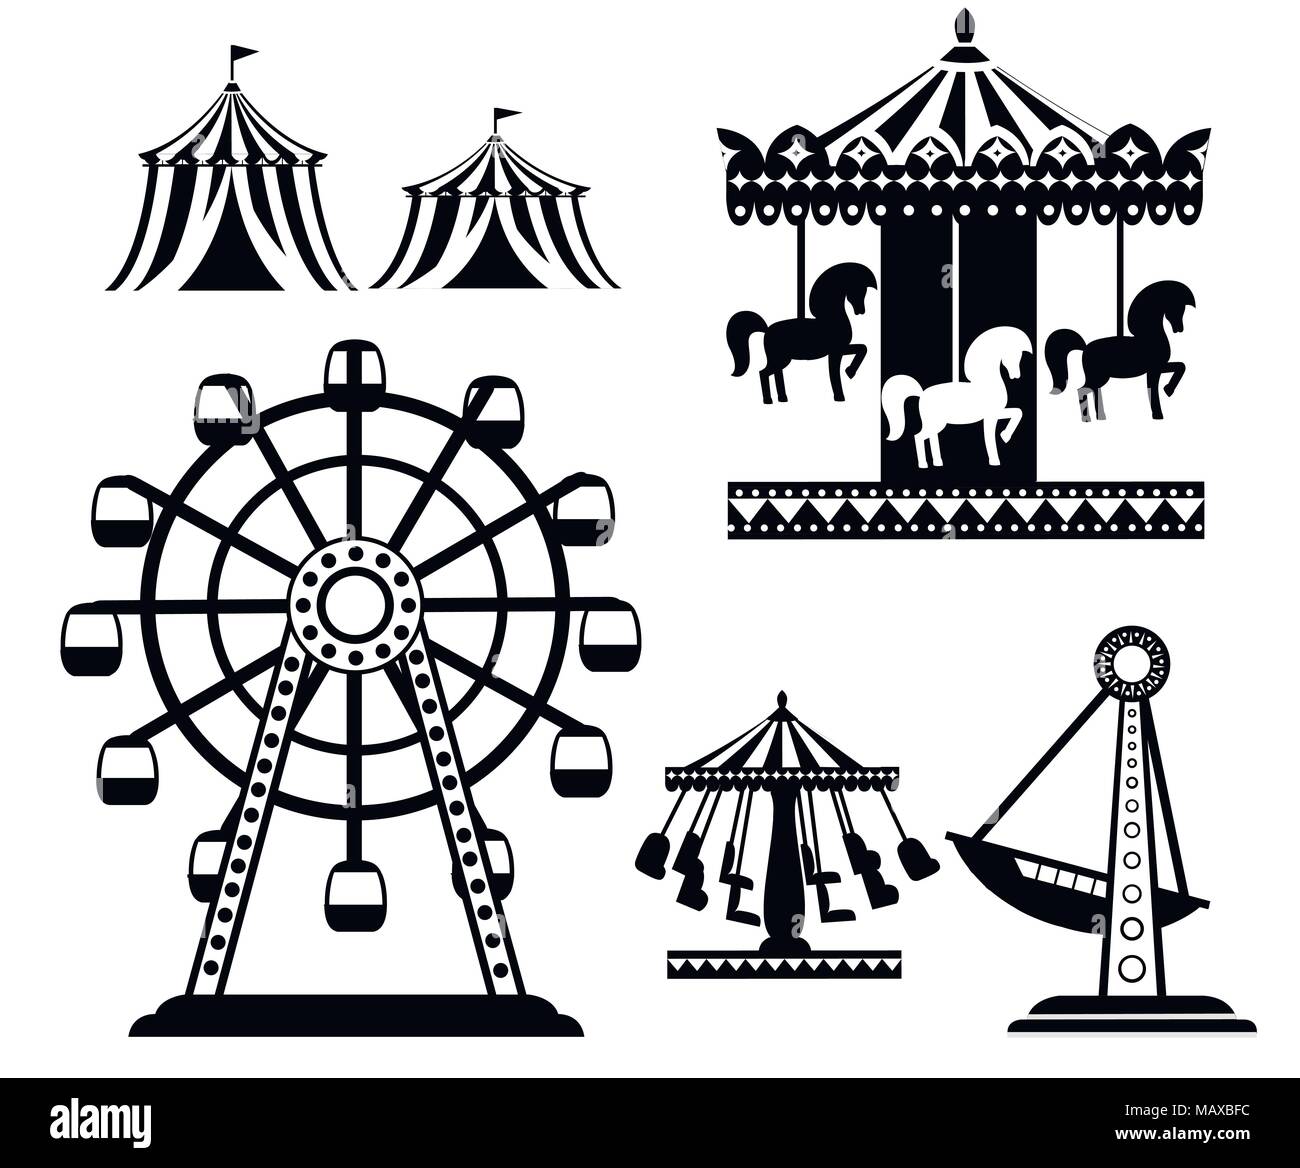 Schwarze Silhouette. Satz von Karneval Zirkus Symbole. Amusement Park Sammlung. Zelt, Karussell, Riesenrad, Piratenschiff. Cartoon Design. Vektor krank Stock Vektor